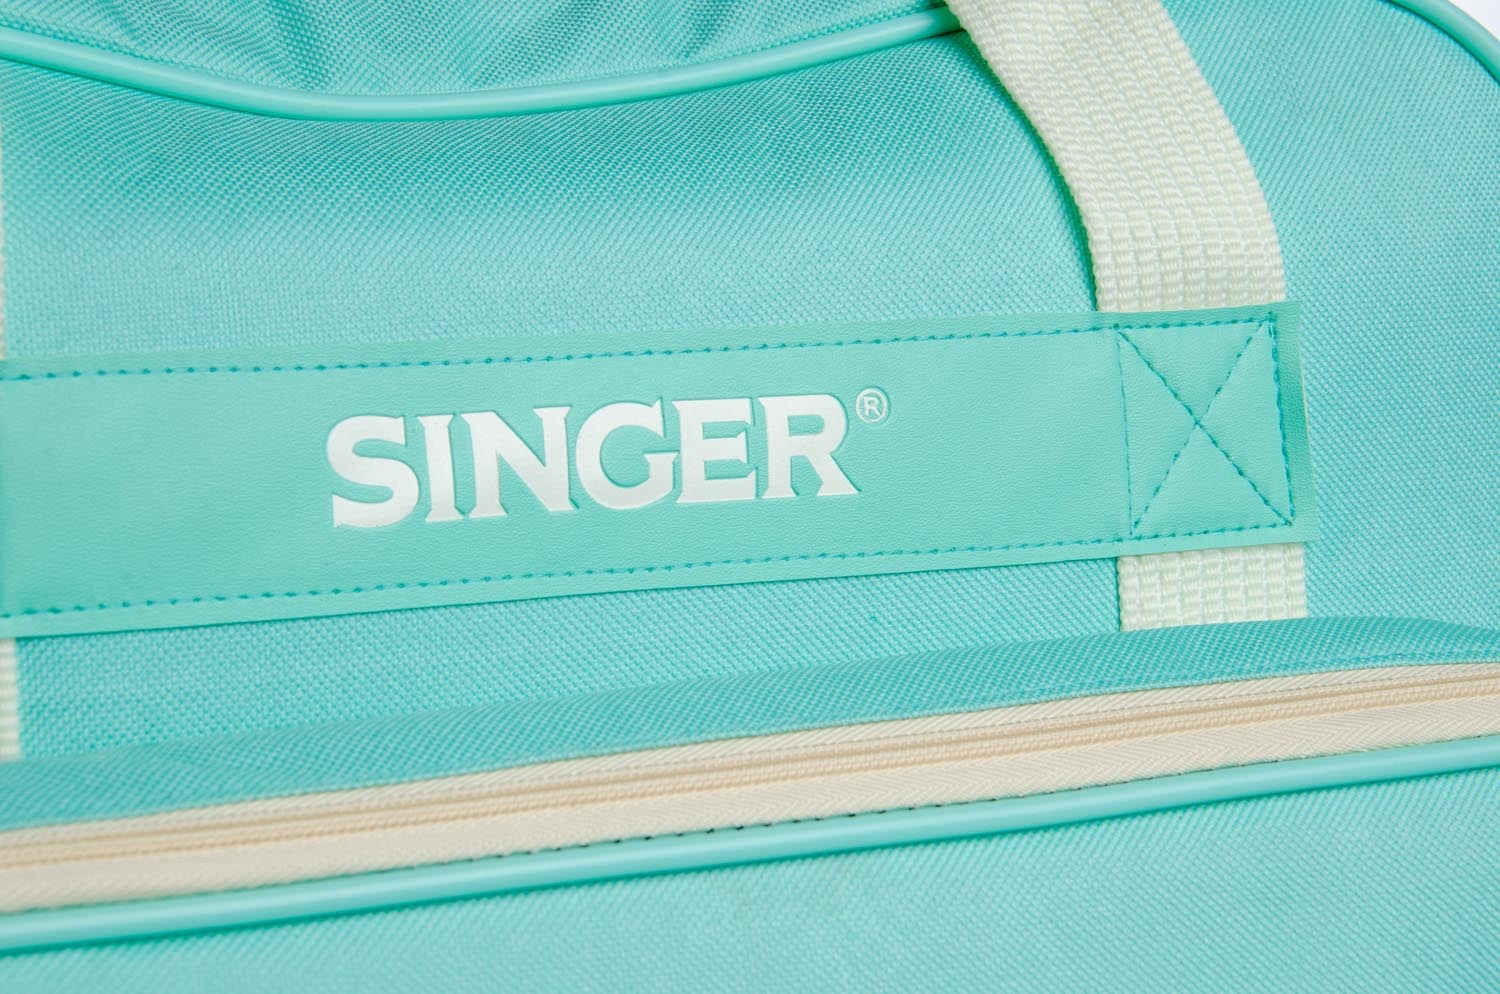 Singer SINGER Universal Canvas Tote Bag - Teal